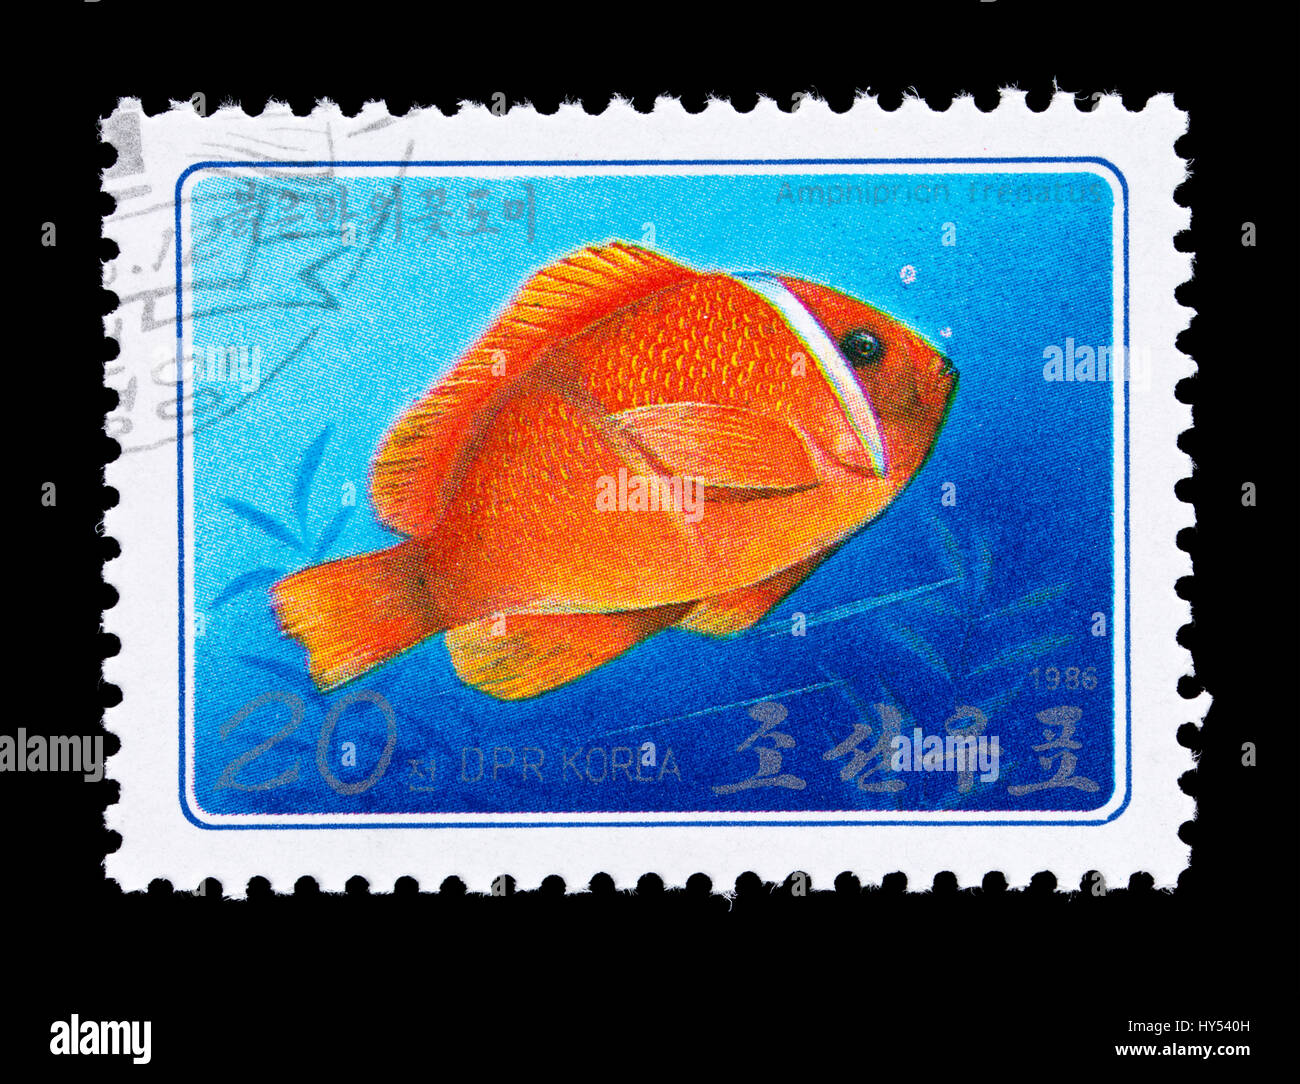 Francobollo dalla Corea del Nord che raffigura un pomodoro clownfish (Amphiprion frenatus) Foto Stock